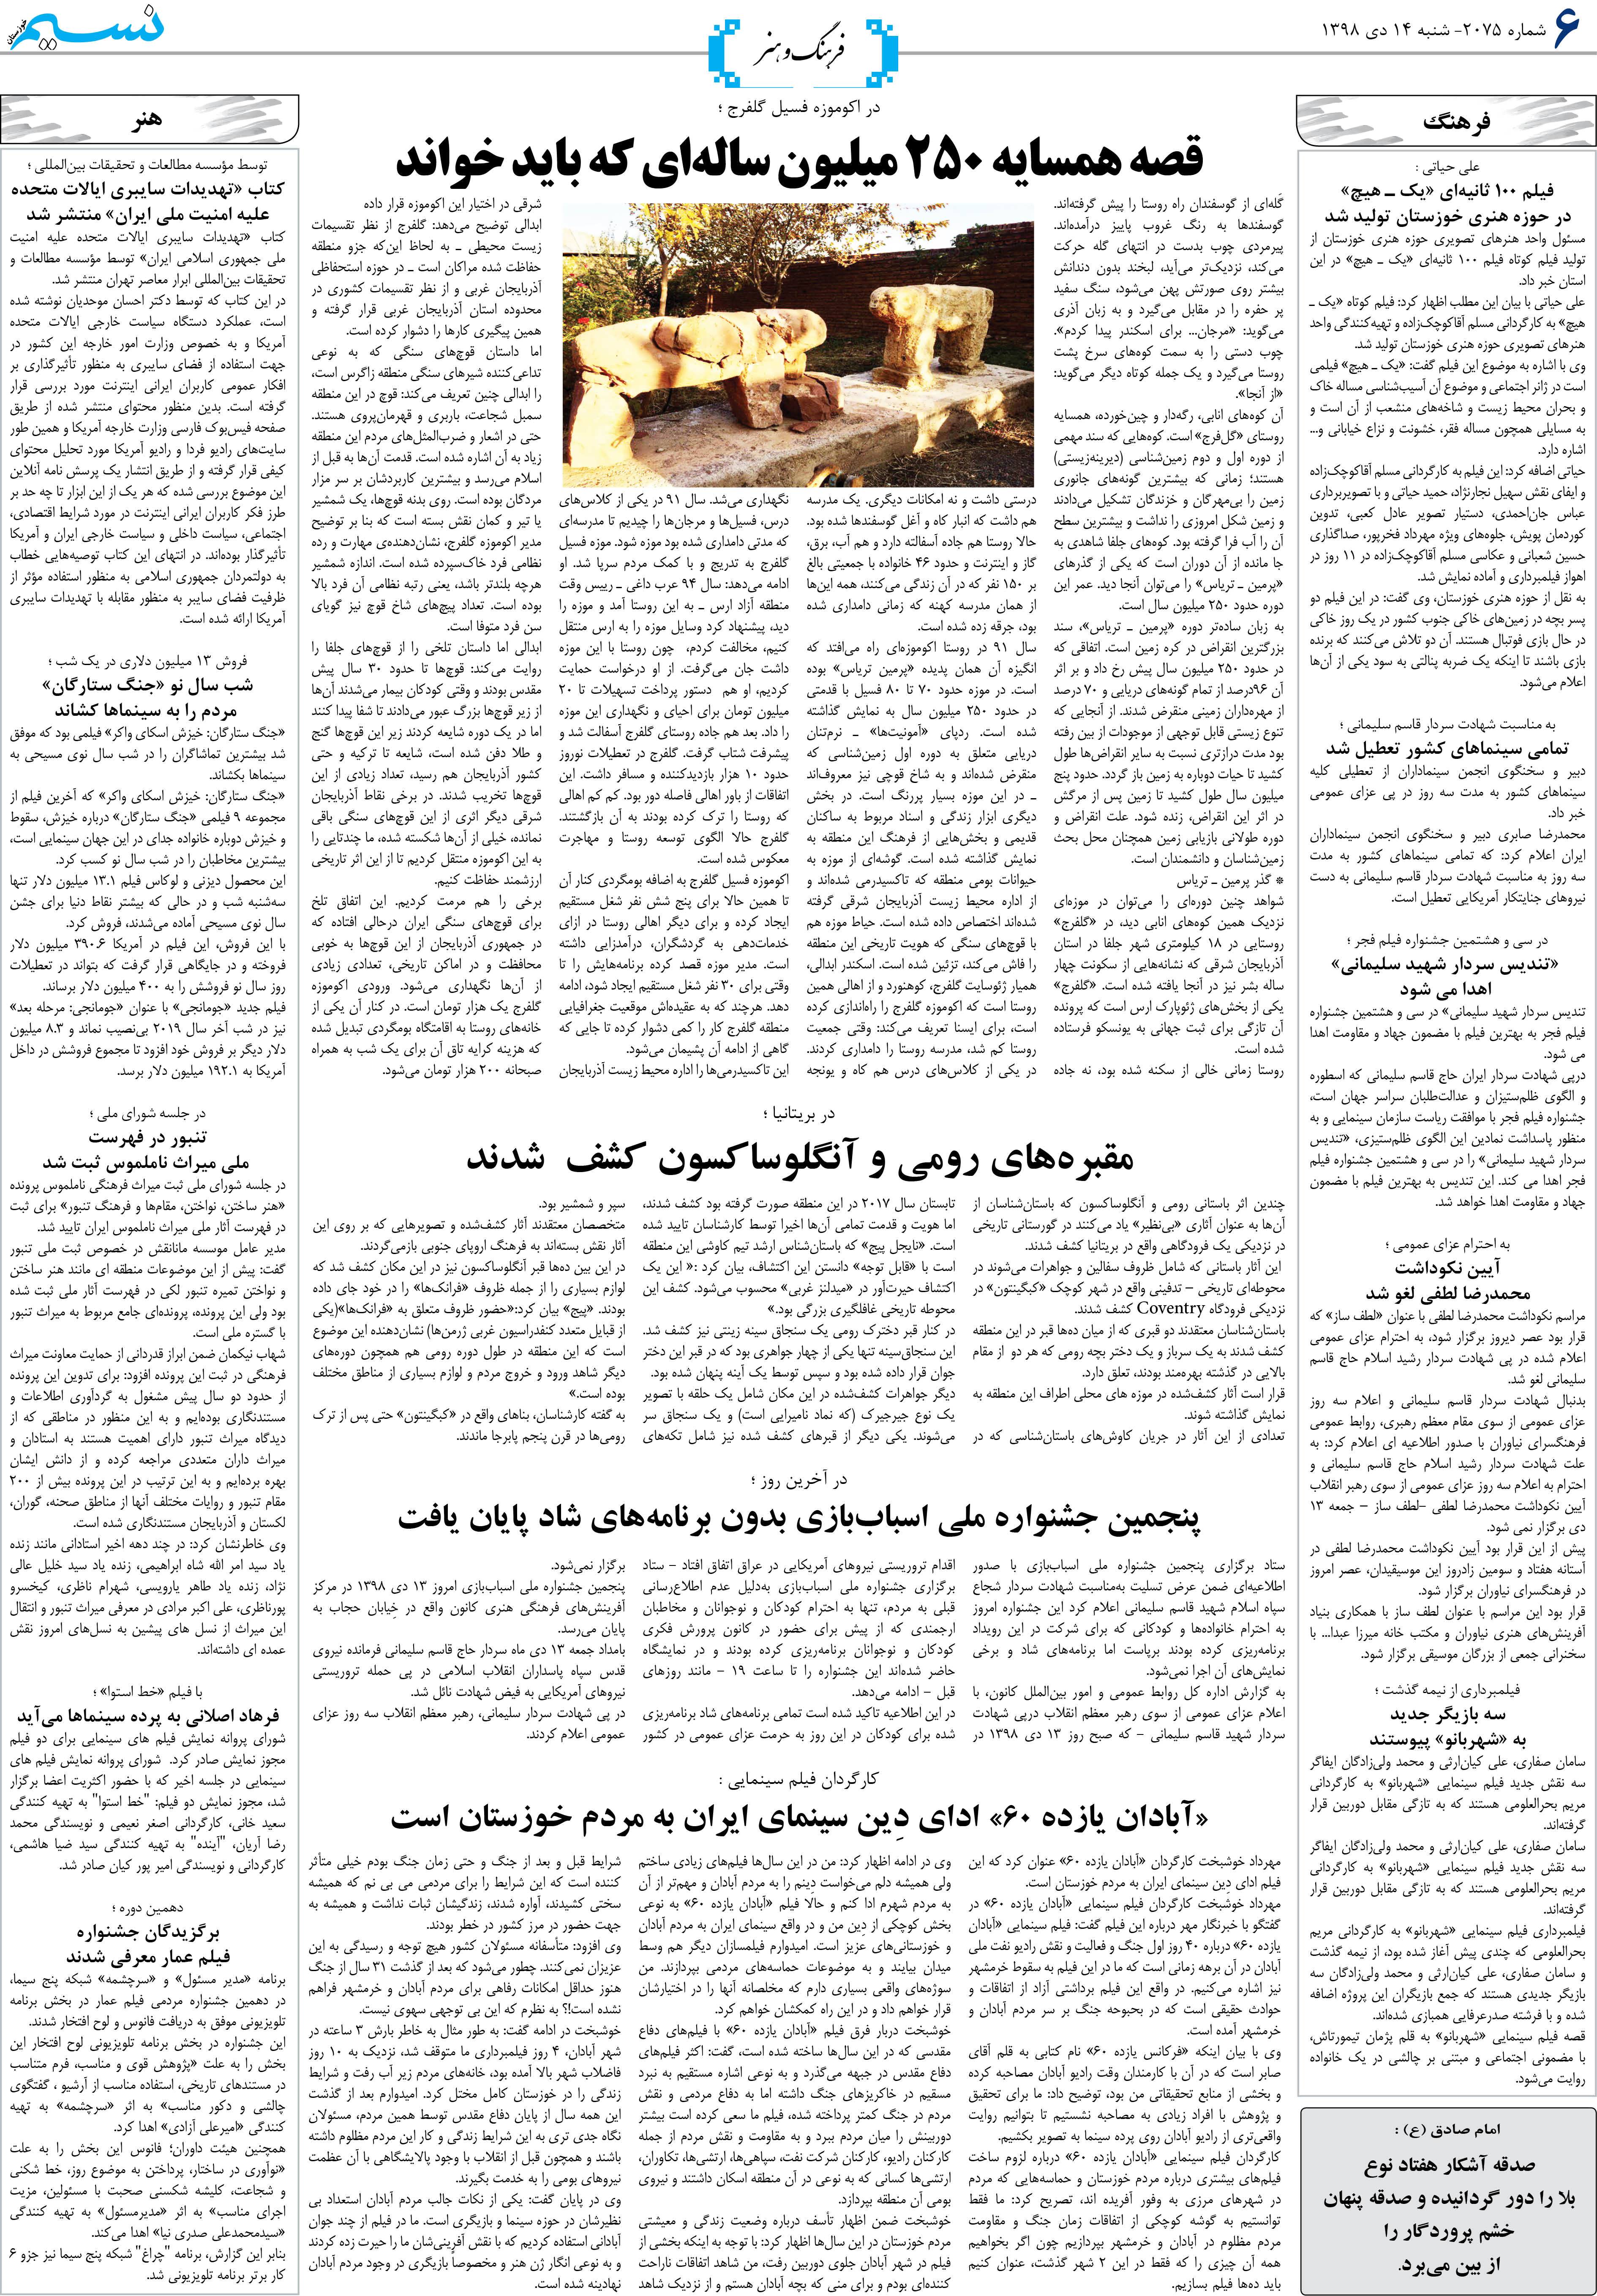 صفحه فرهنگ و هنر روزنامه نسیم شماره 2075